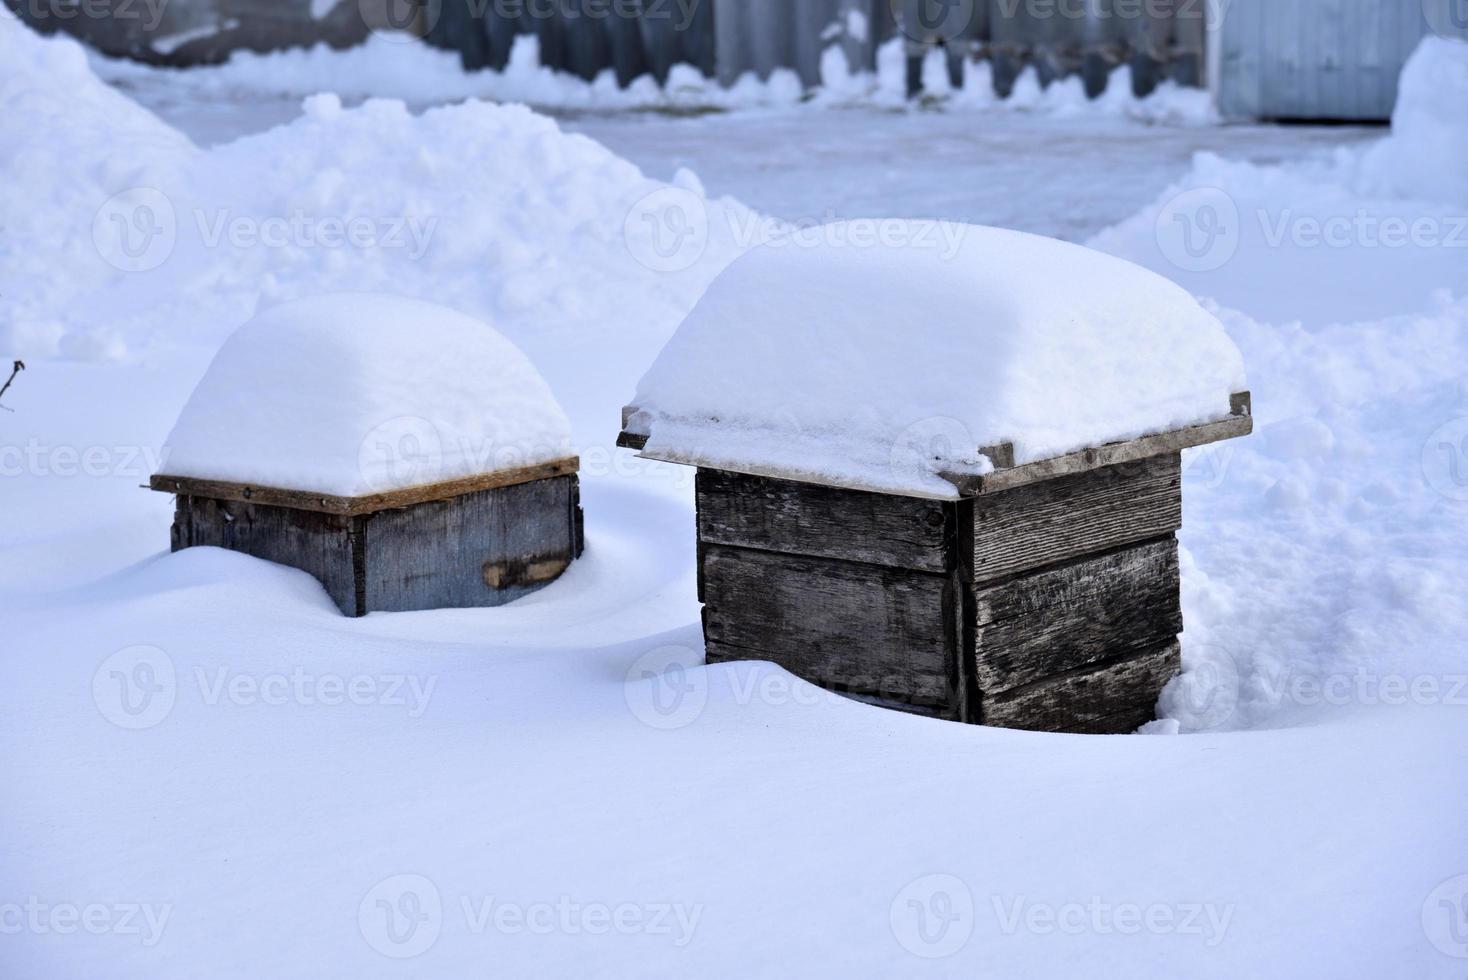 cajas de madera para proteger las flores bajo la nieve. cajas en ventisqueros en invierno. foto